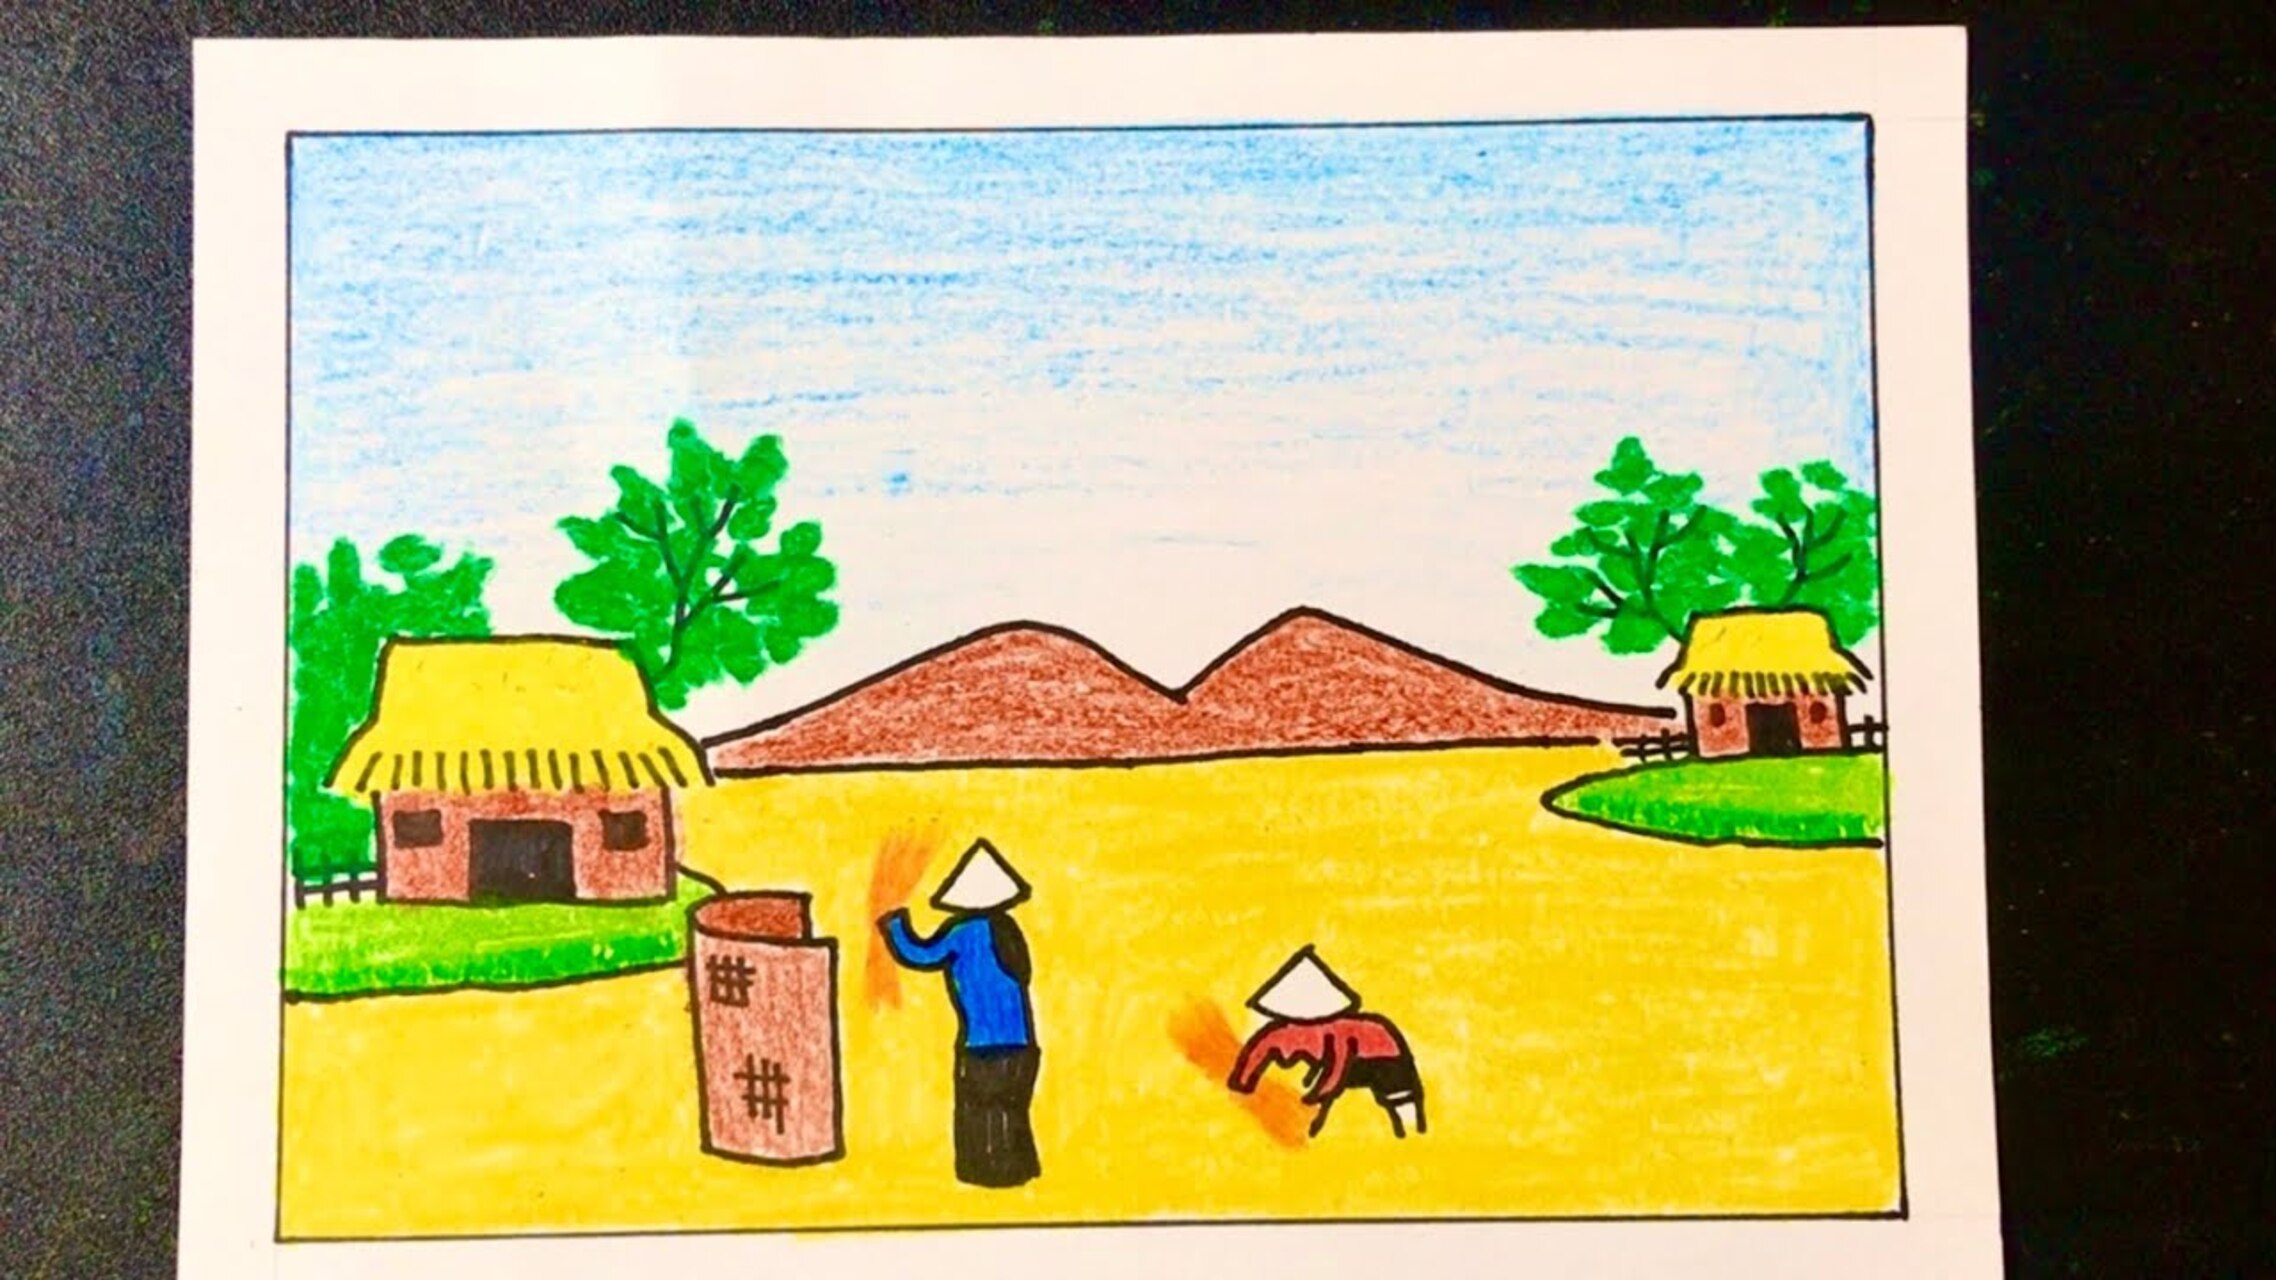 Tranh vẽ cảnh gặt lúa ở Tiền đồng 2